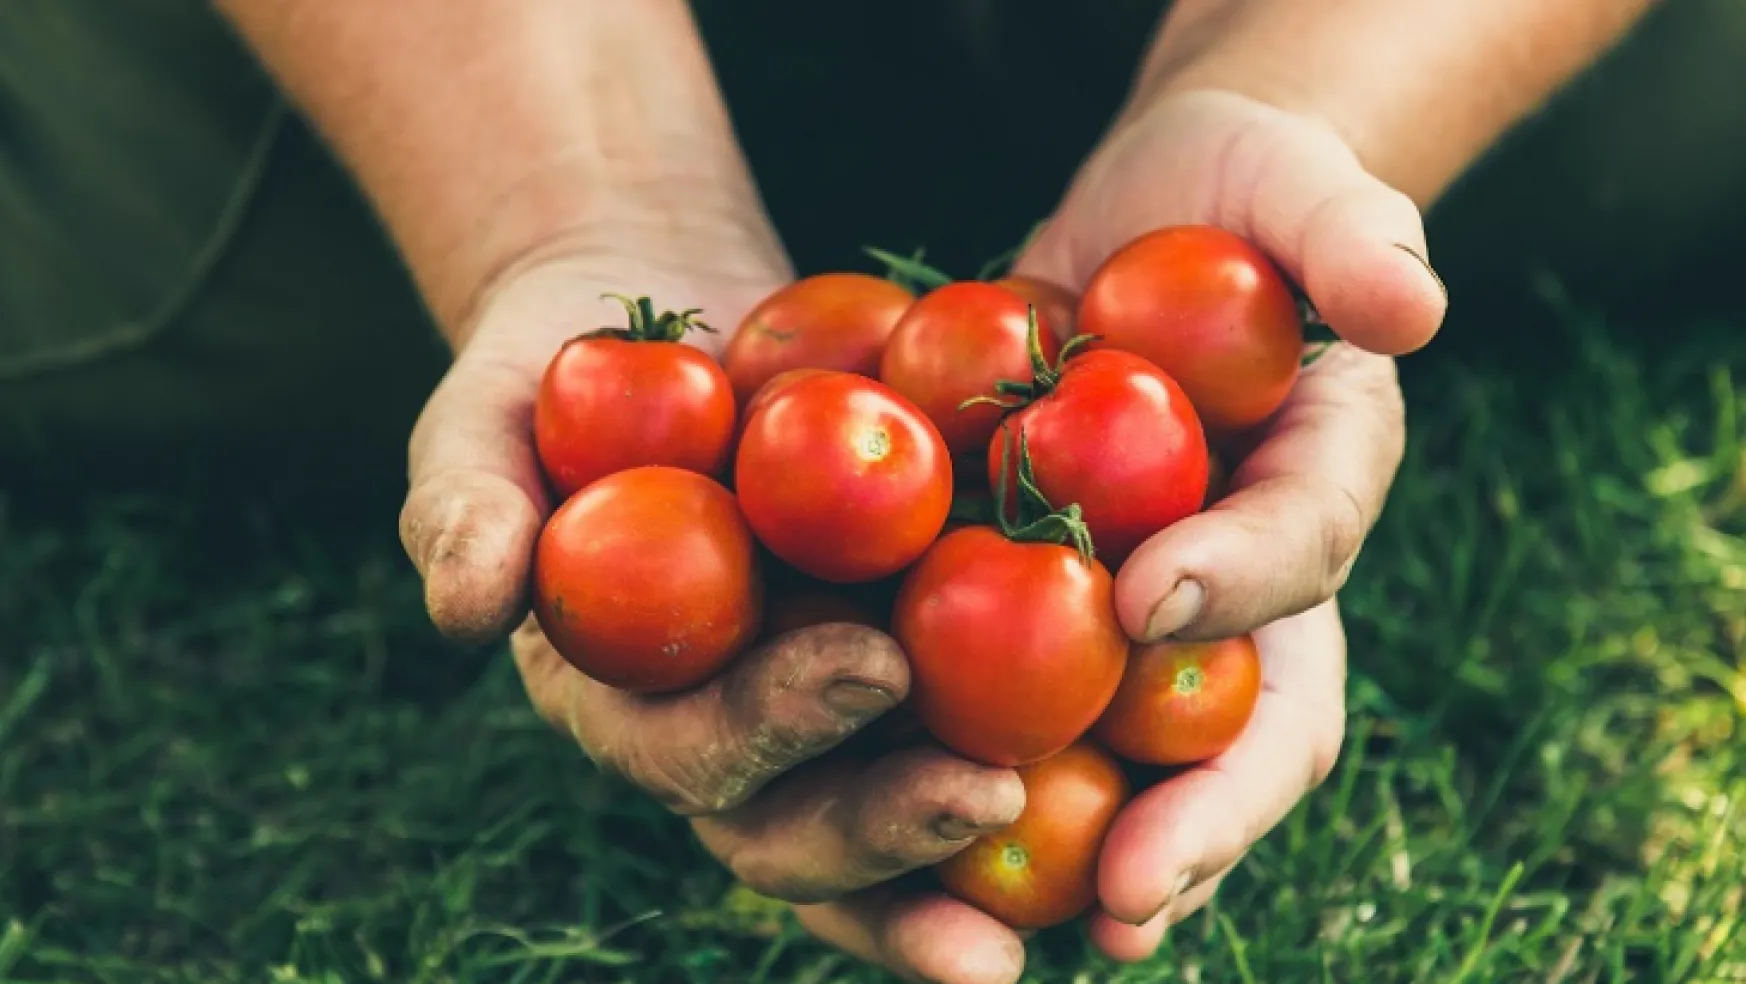 Rusya'ya domates ihracatında kota 350 bin tondan 500 bin tona çıkarıldı